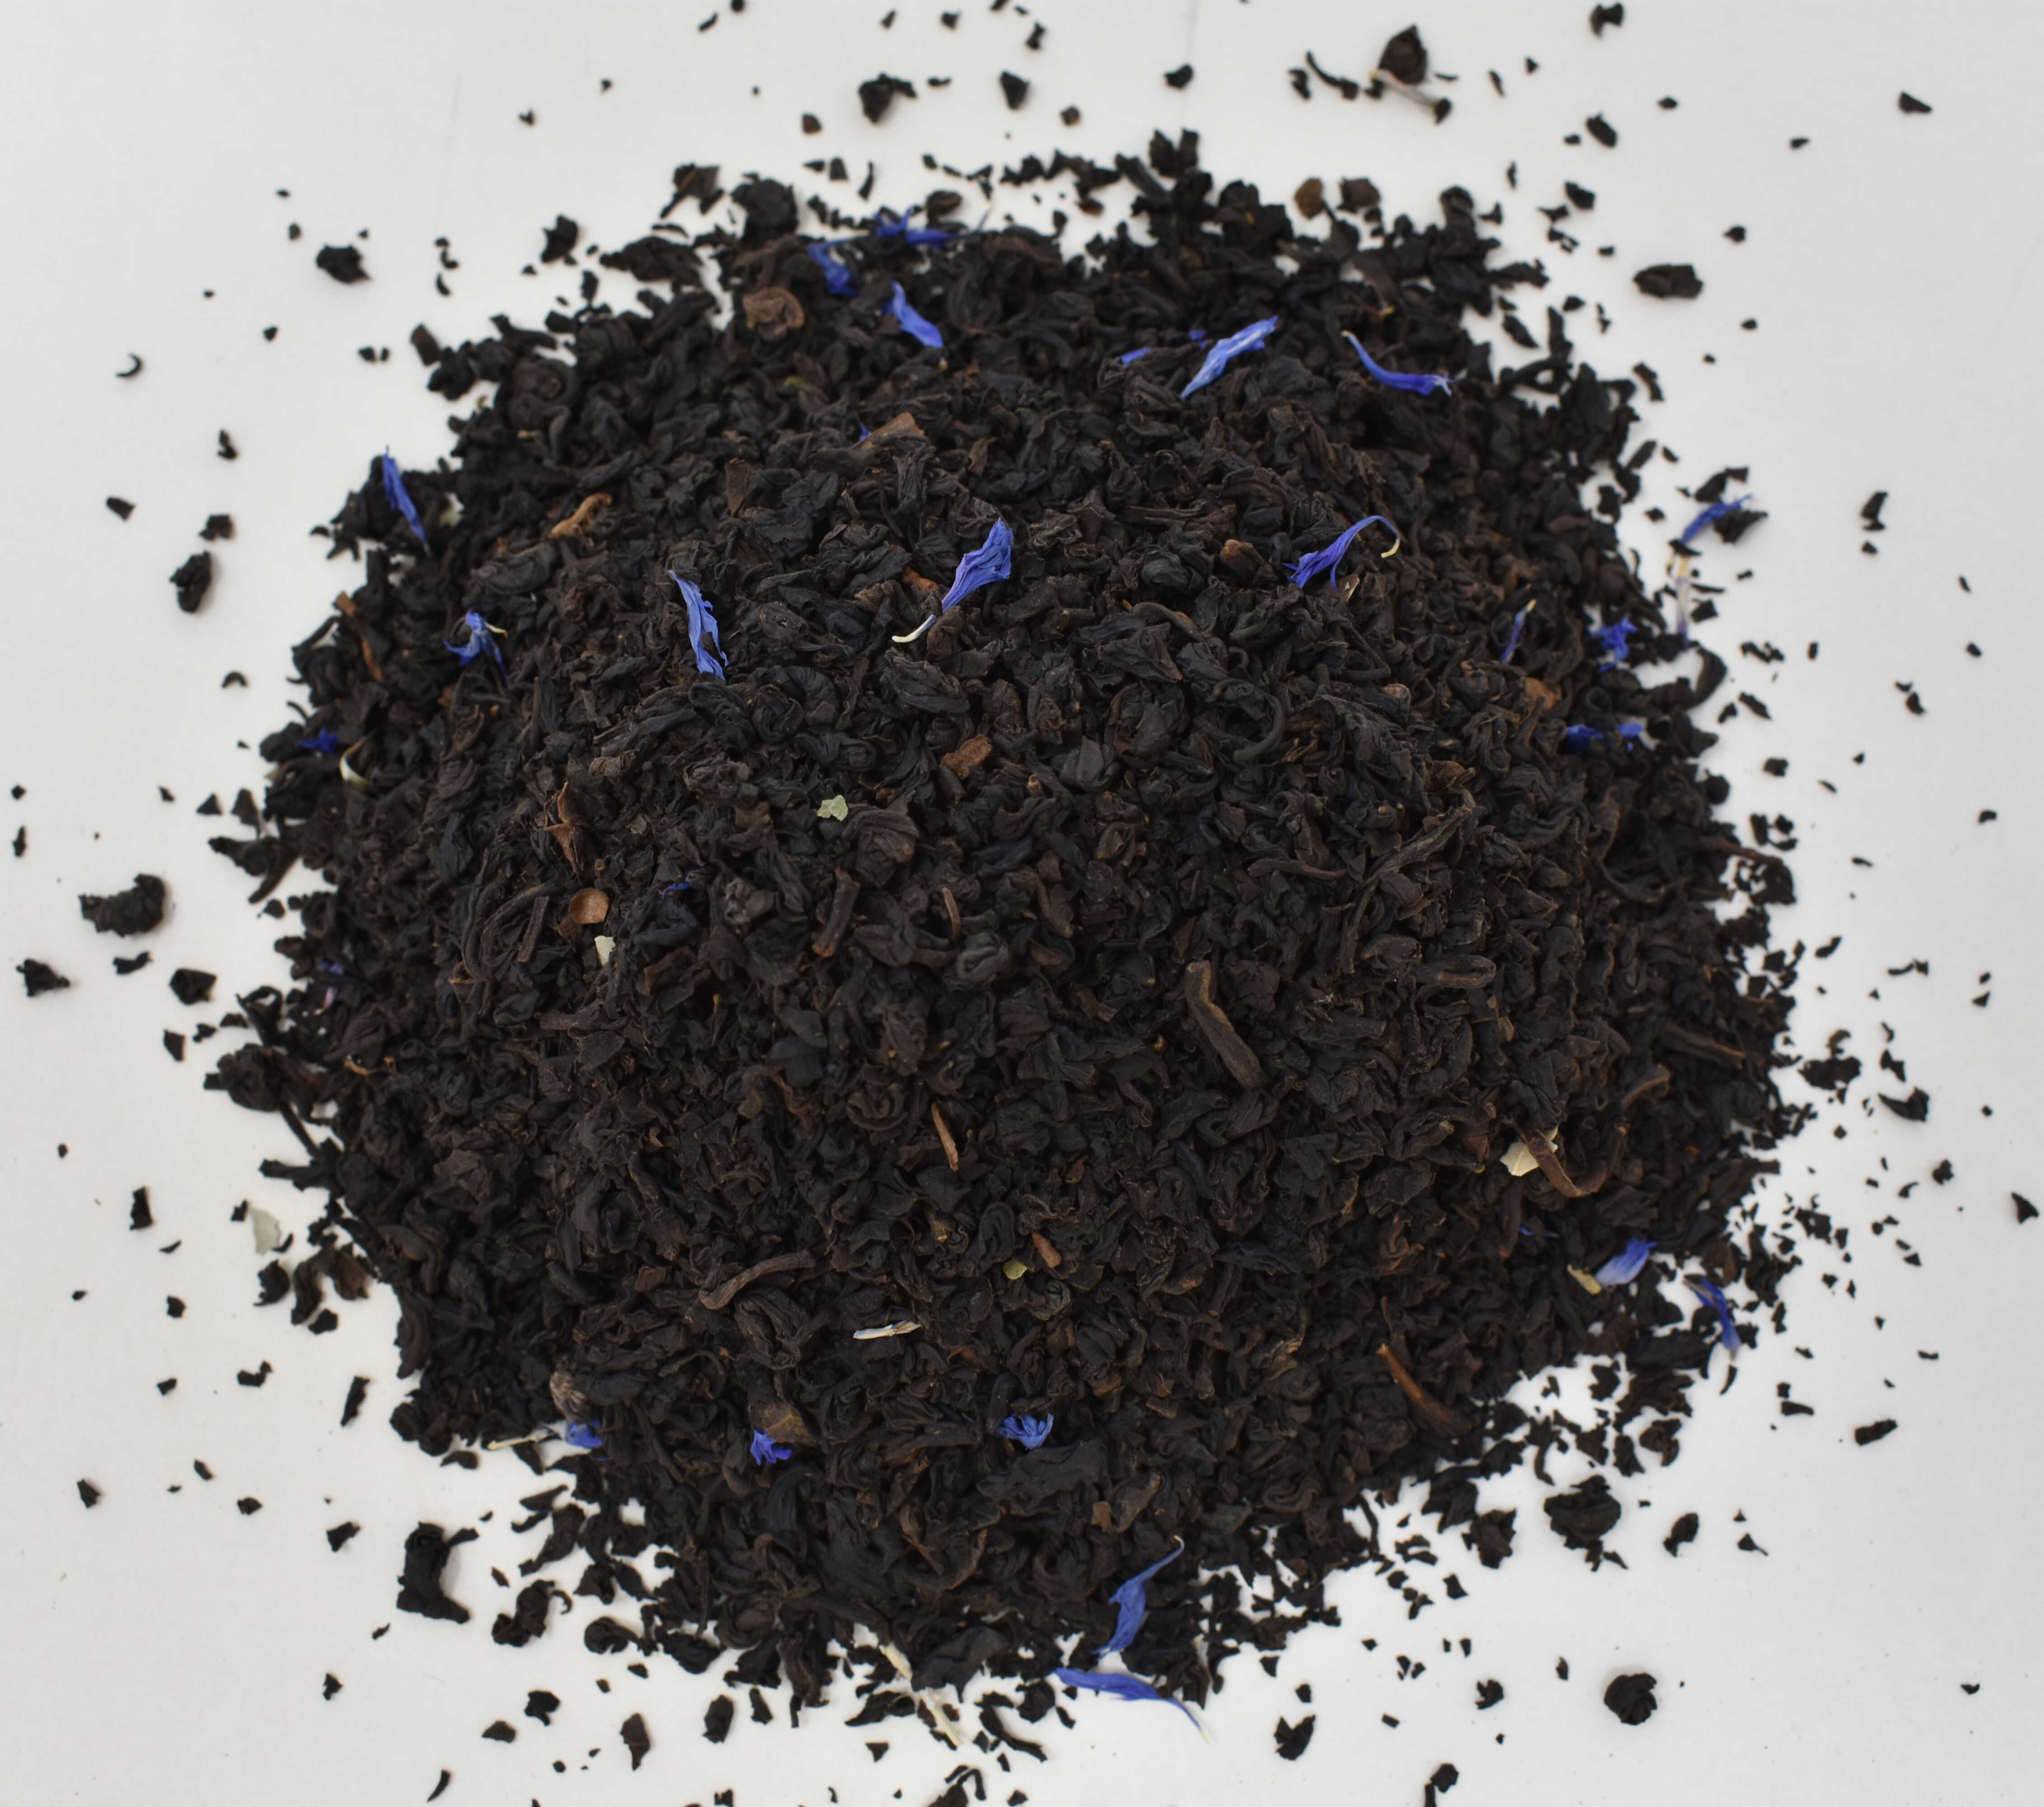 Black Currant Decaf Black Tea - Top Photo